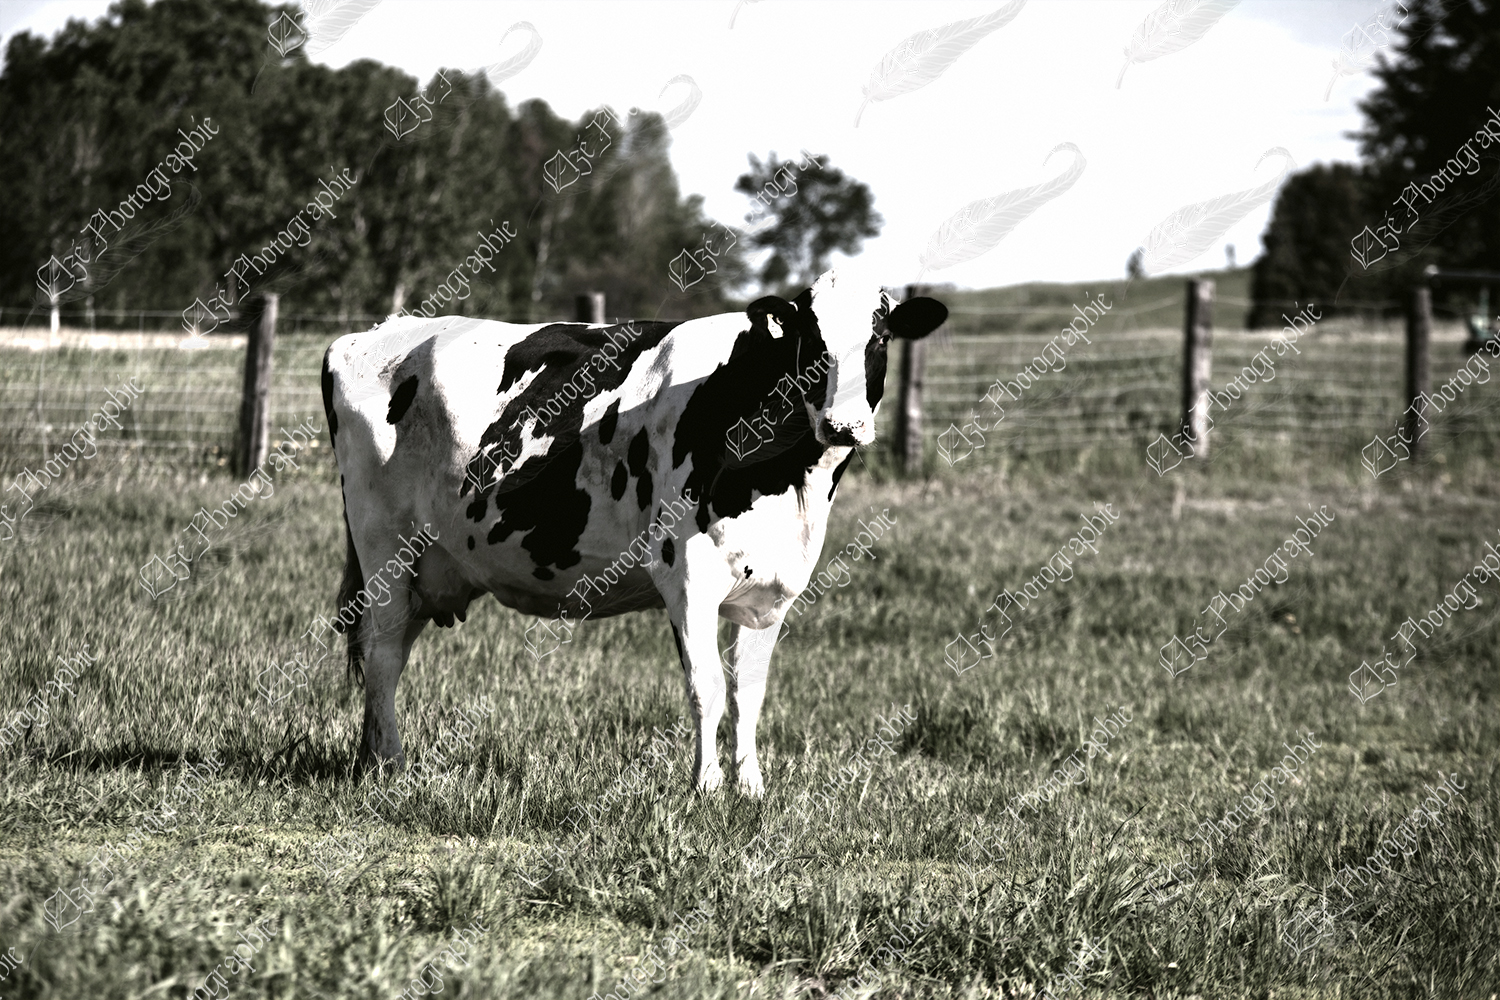 elze_photo_1252_vache_ferme_laitiere_pasture_cow_mature